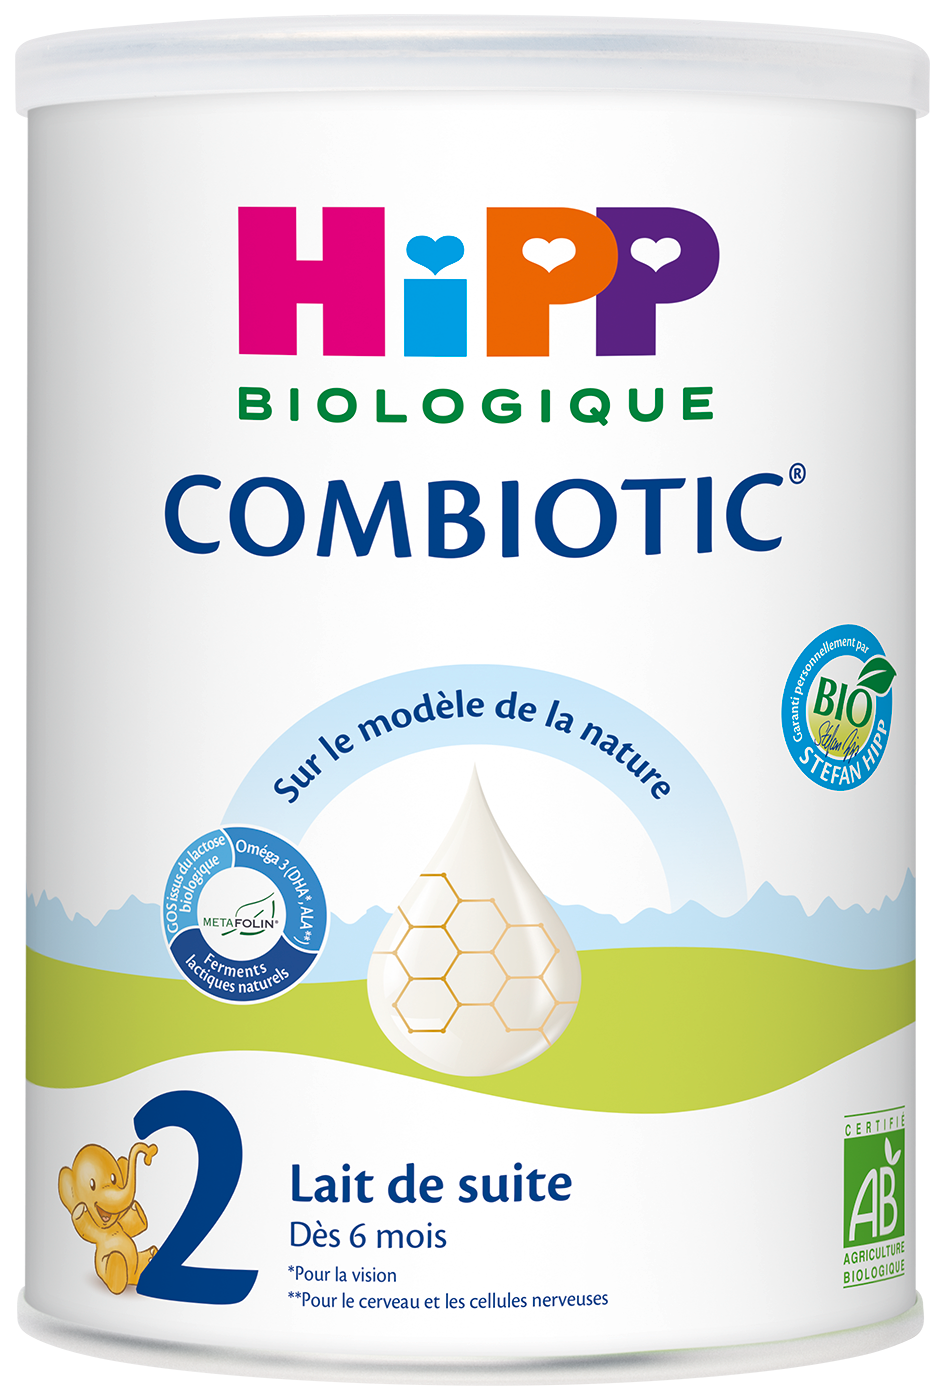 Hipp Combiotic 2